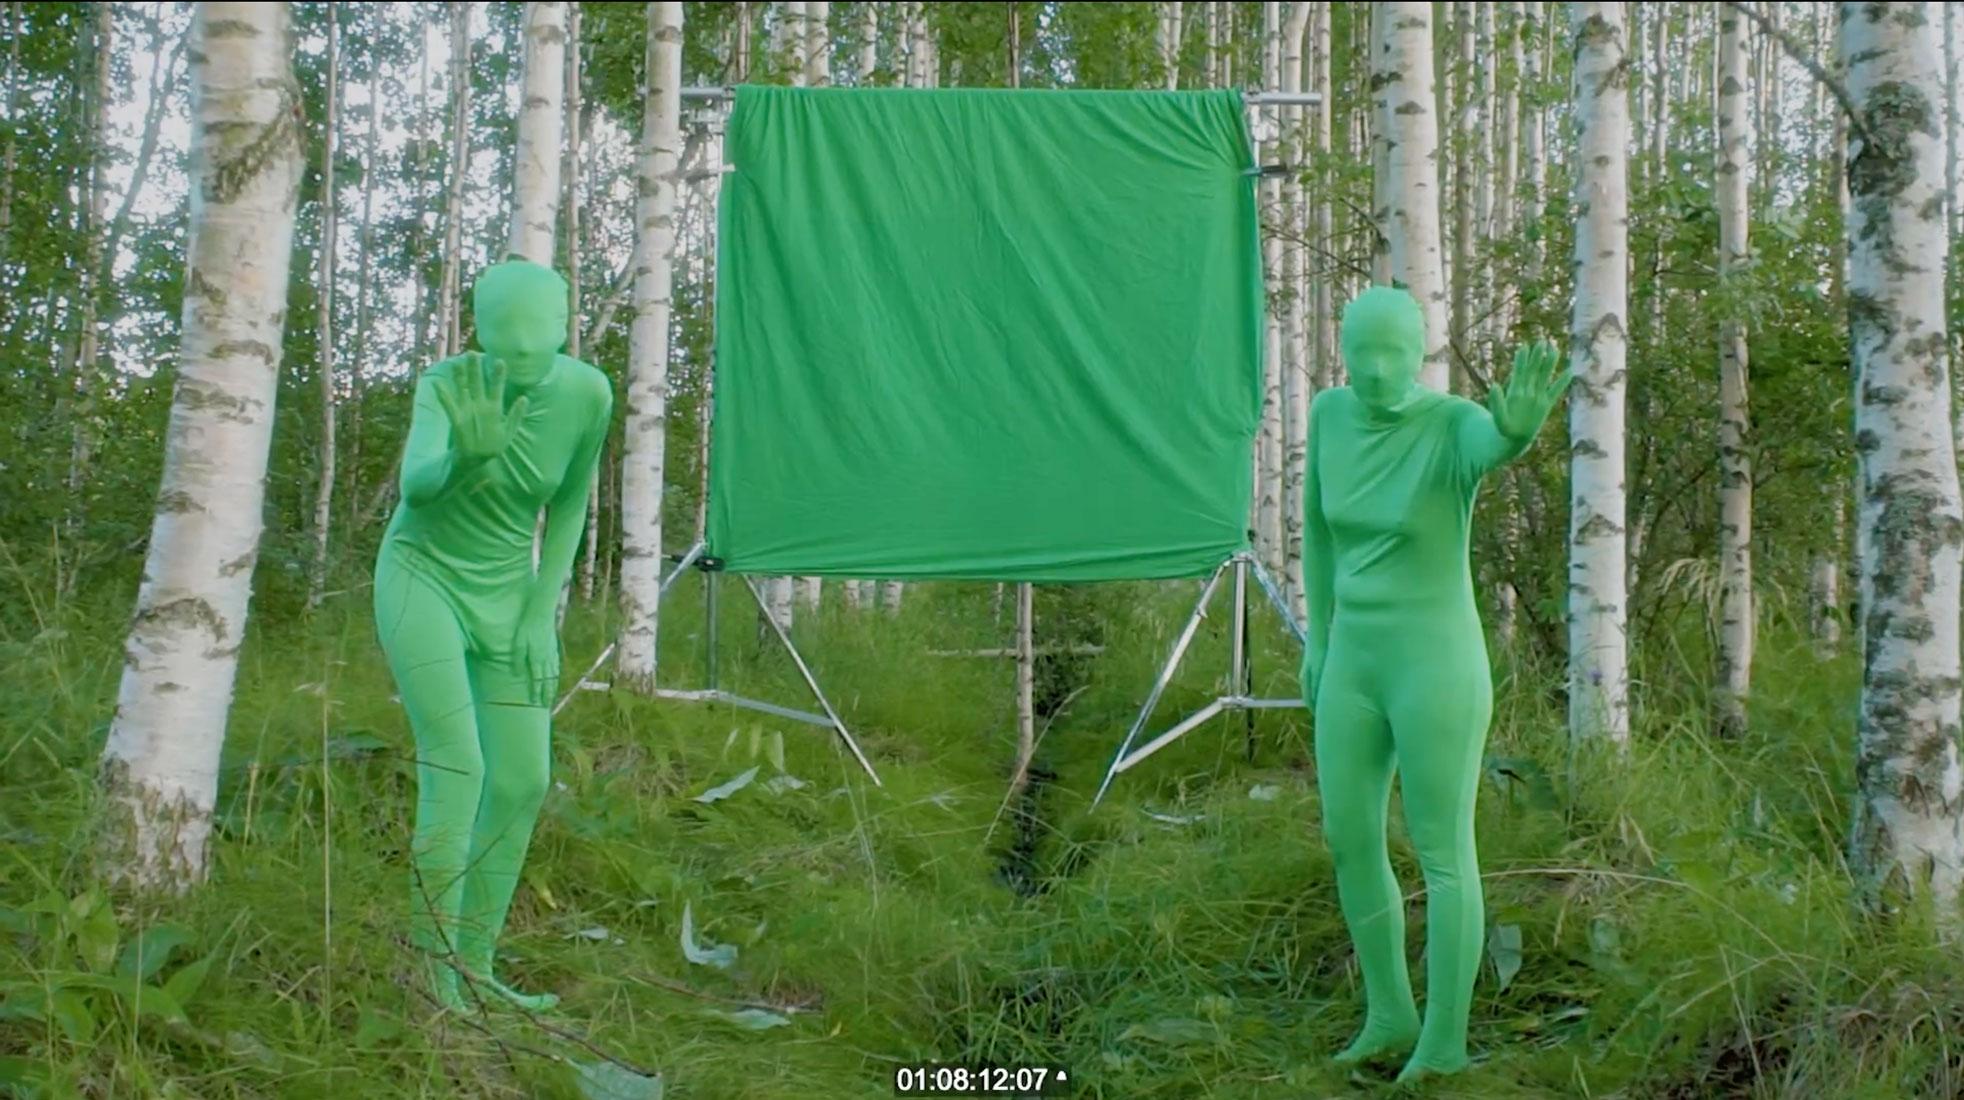 Laaja puolikuva vehreästä koivumetsästä, jonka keskellä seisoo symmetrisesti kaksi kokonaan vihreää ihmismäistä hahmoa, he ovat nostaneet toisen kätensä kohti kameraa. Heidän keskelle on ripustettu vihreä kangas.